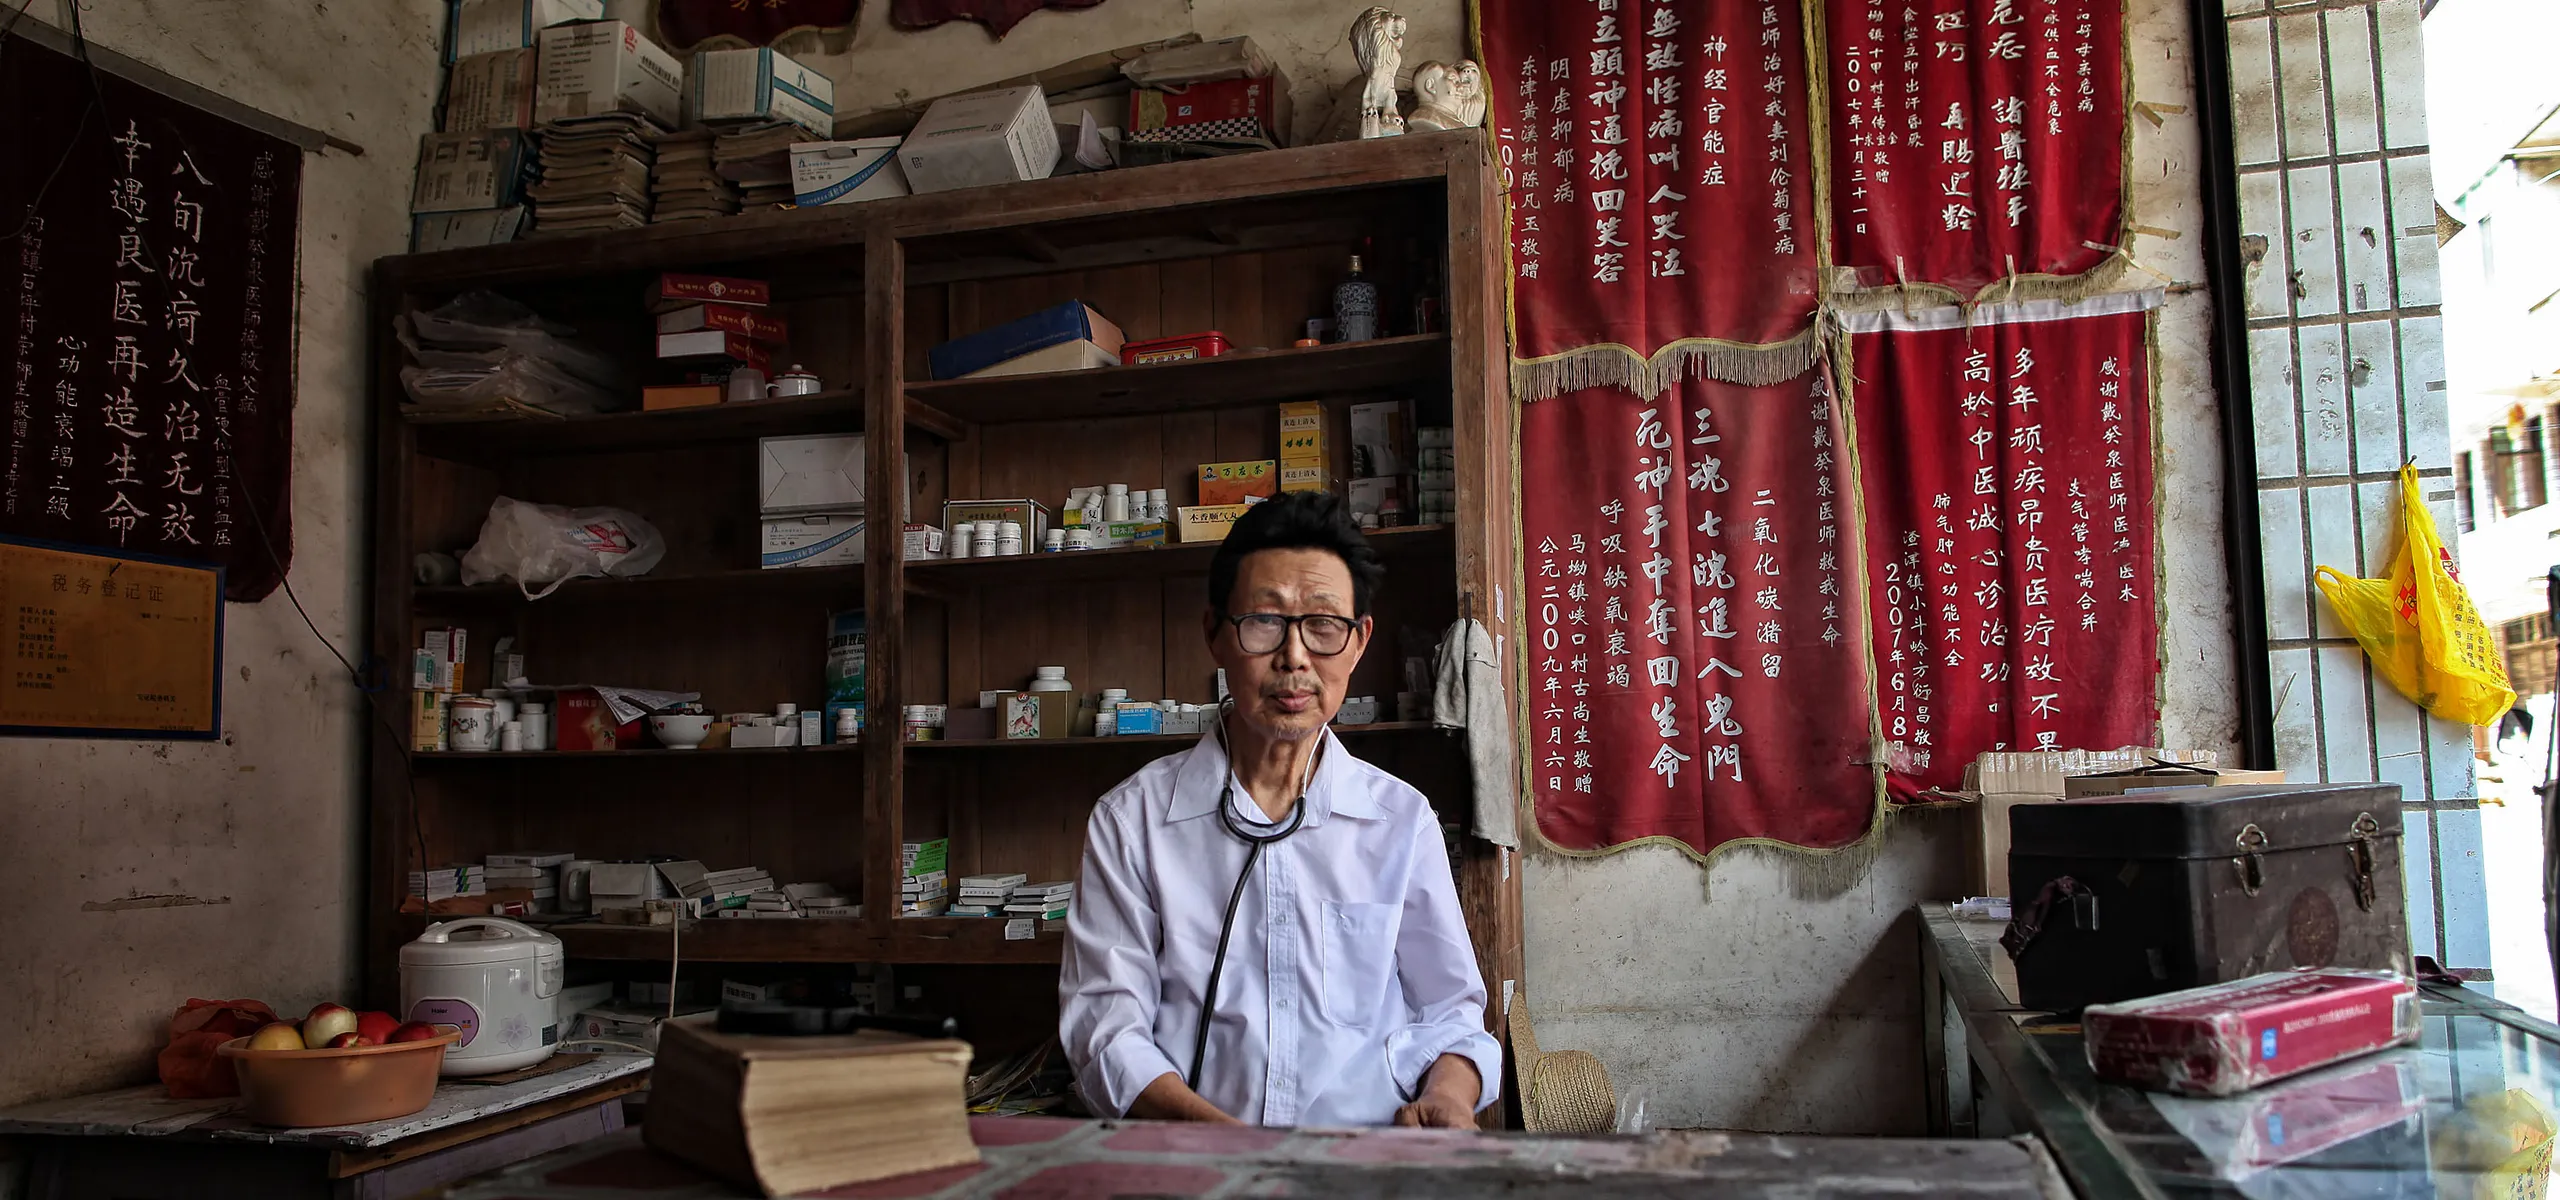 Rural doctor from Jiangxi